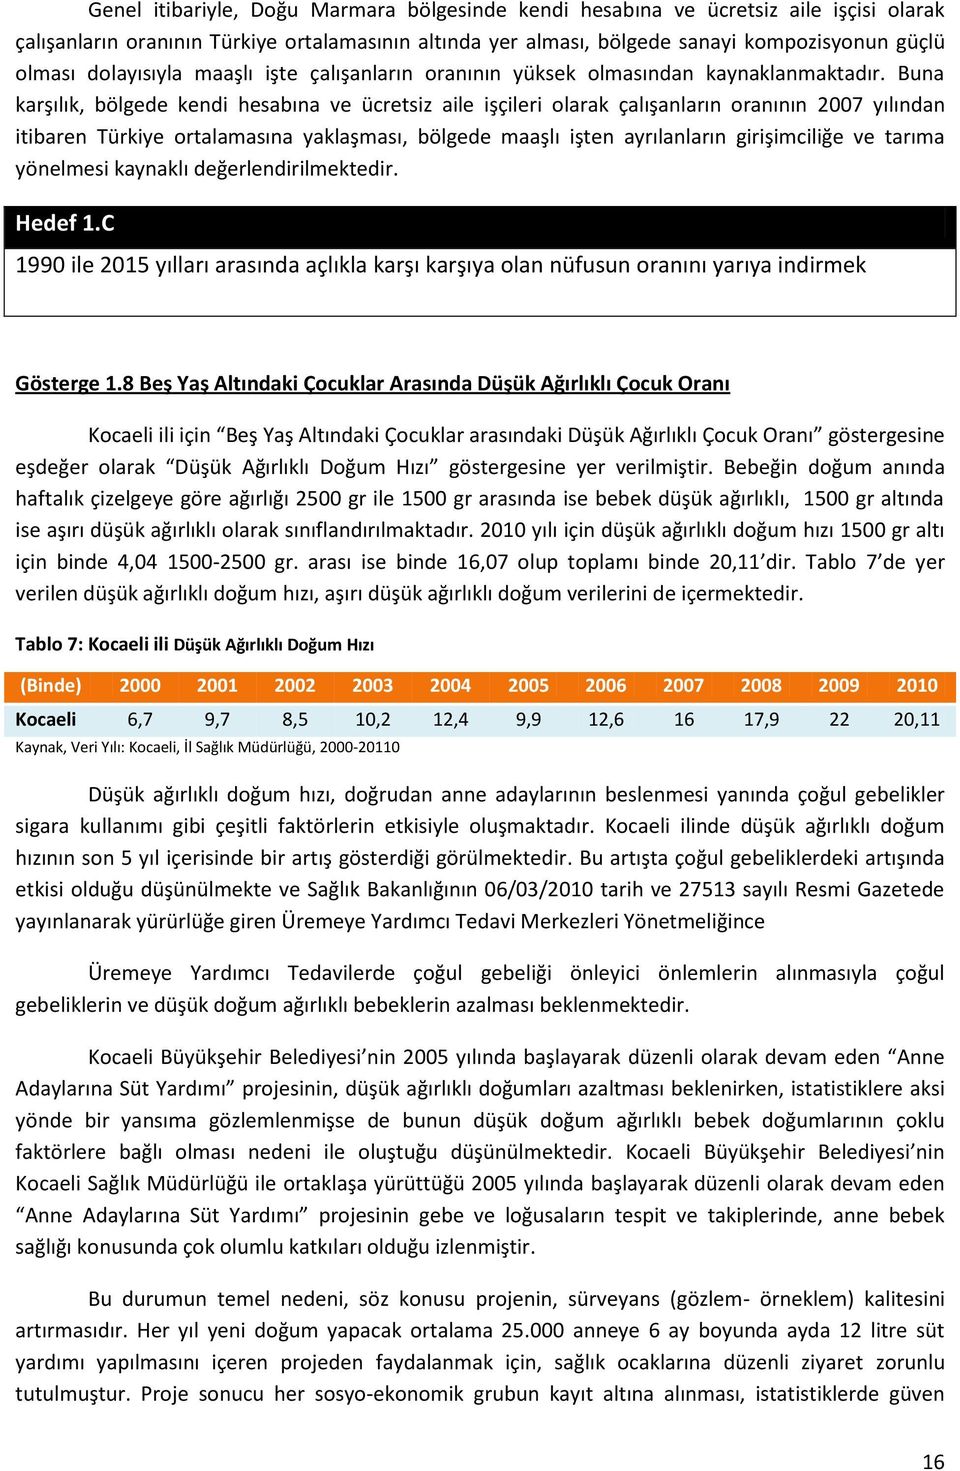 Buna karşılık, bölgede kendi hesabına ve ücretsiz aile işçileri olarak çalışanların oranının 2007 yılından itibaren Türkiye ortalamasına yaklaşması, bölgede maaşlı işten ayrılanların girişimciliğe ve